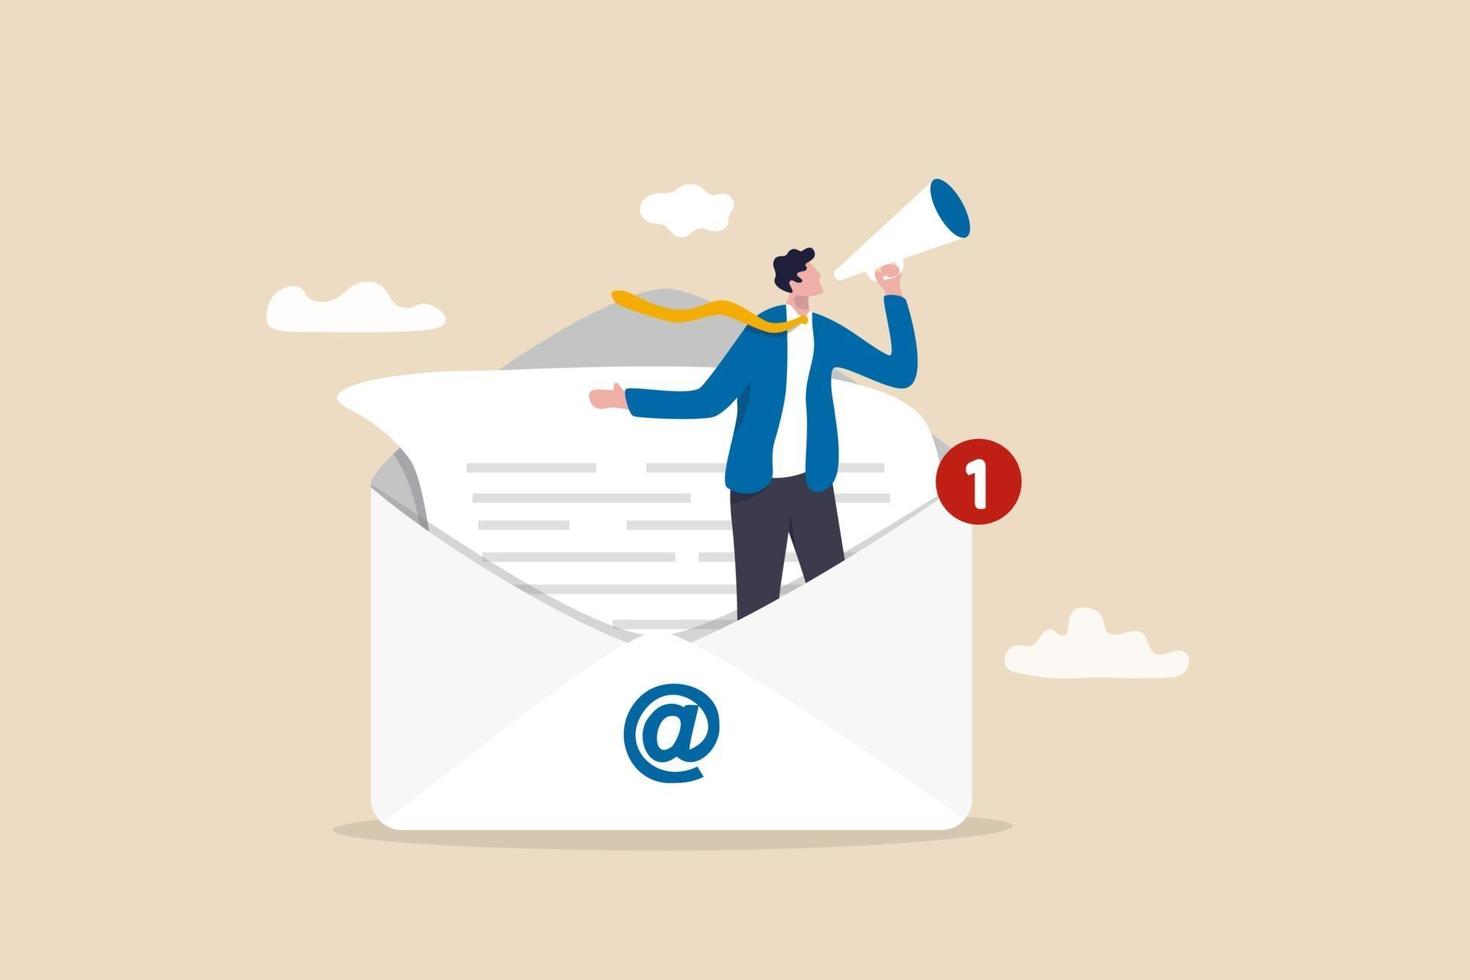 e-postmarknadsföring, crm, prenumeration på webben och skicka nyhetsbrev för e-post för rabatt- eller marknadsföringsinformationskoncept, affärsman som står i e-postkuvert som meddelar marknadsföring via megafon vektor